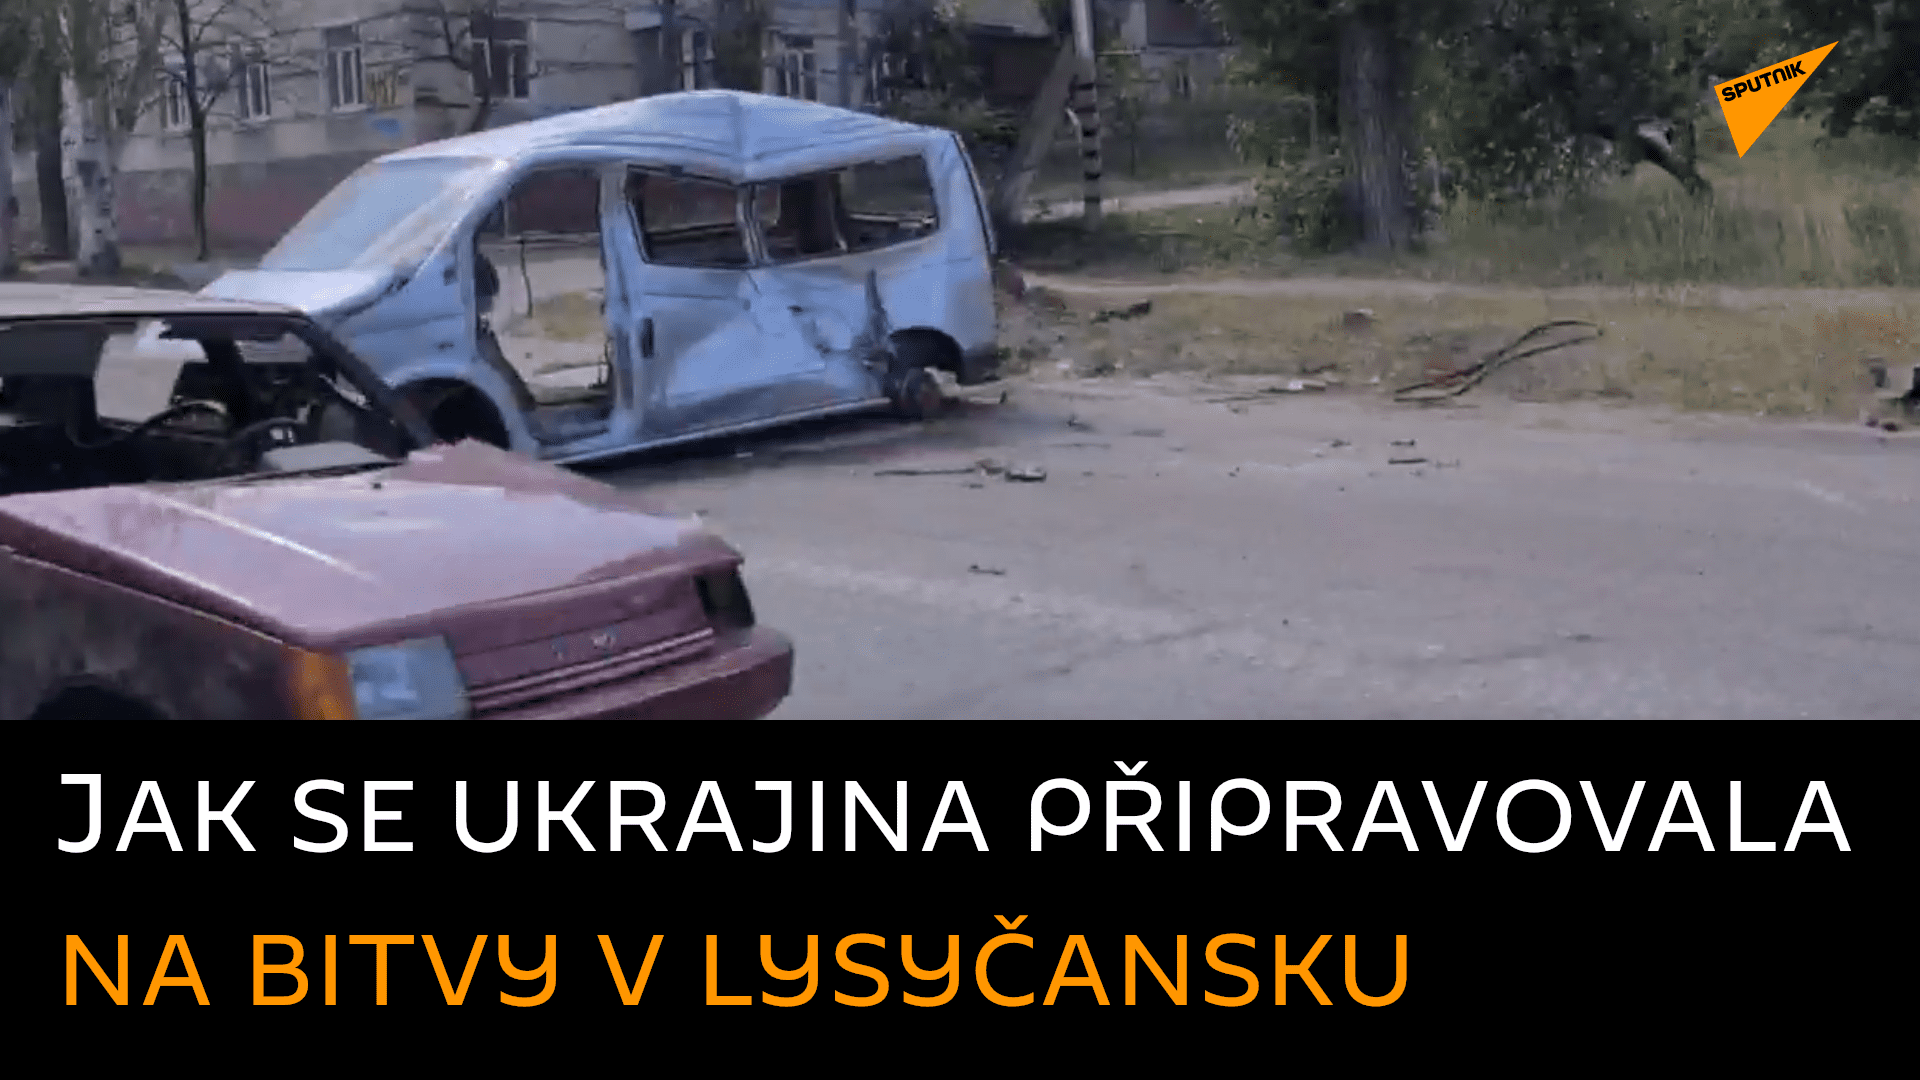 „Nesmyslné barikády.“ Voják LLR o tom, jak ukrajinští bojovníci stavěli barikády z civilních aut